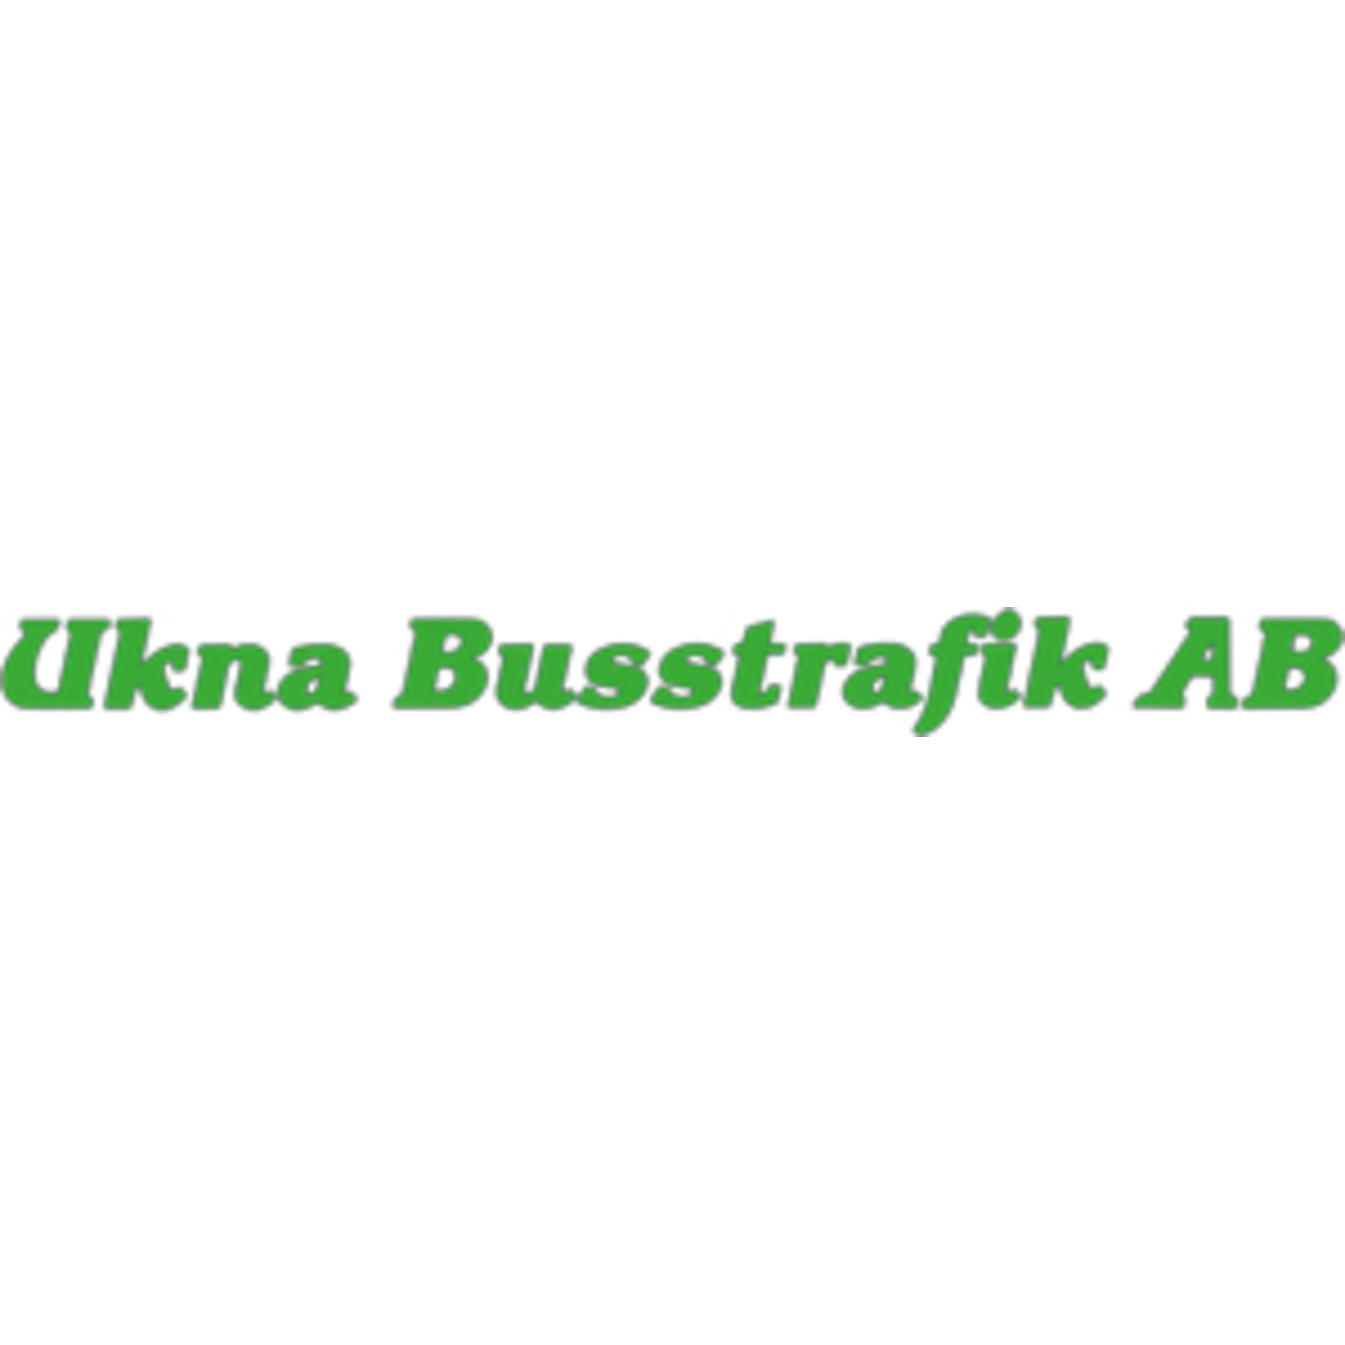 Ukna Busstrafik AB Logo